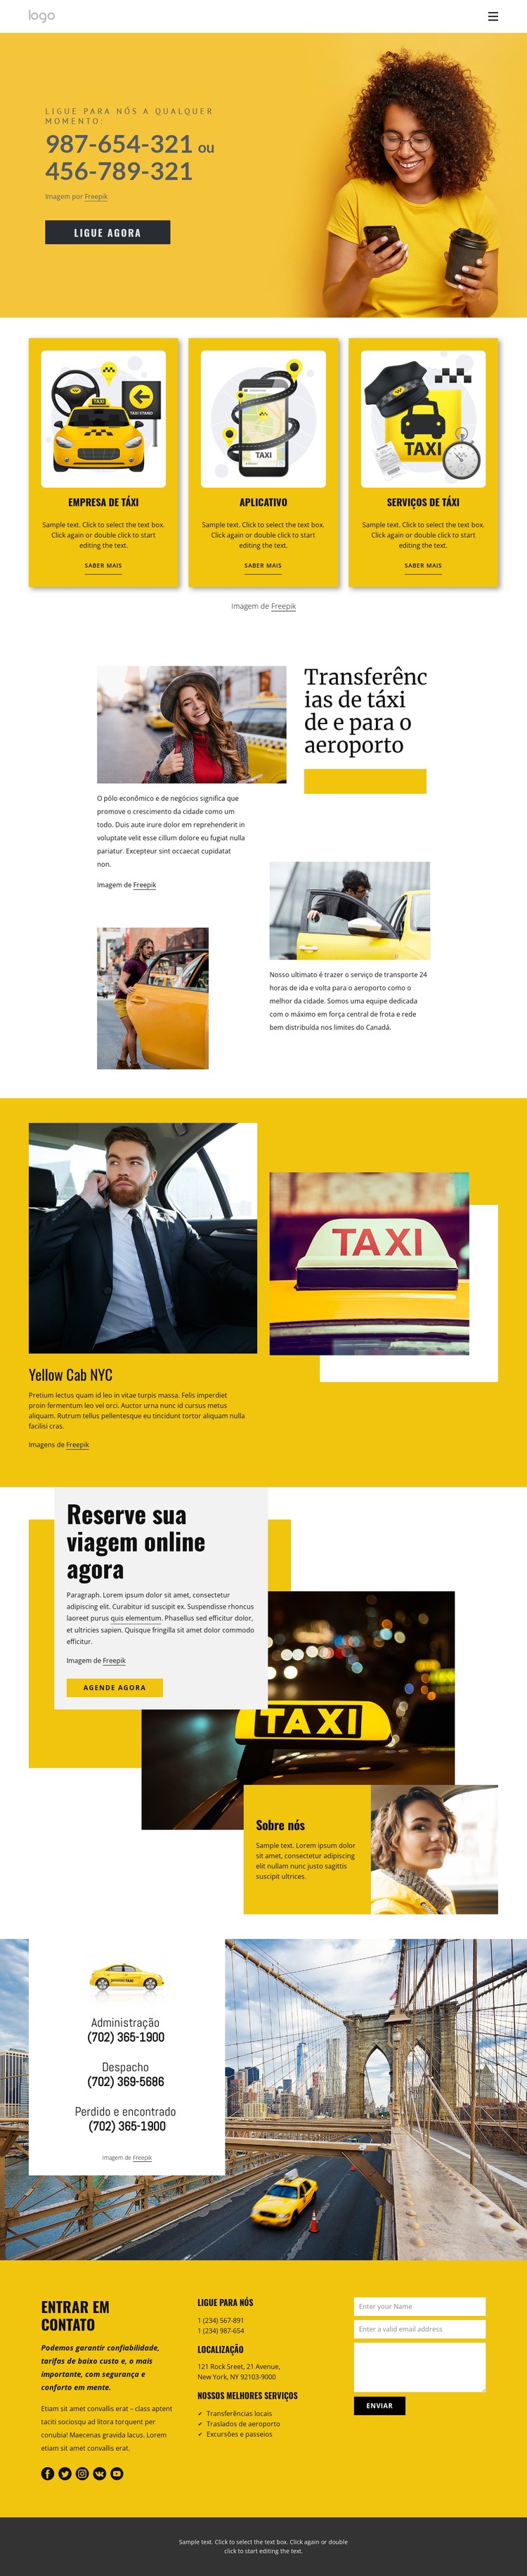 Serviço de táxi de qualidade Template CSS